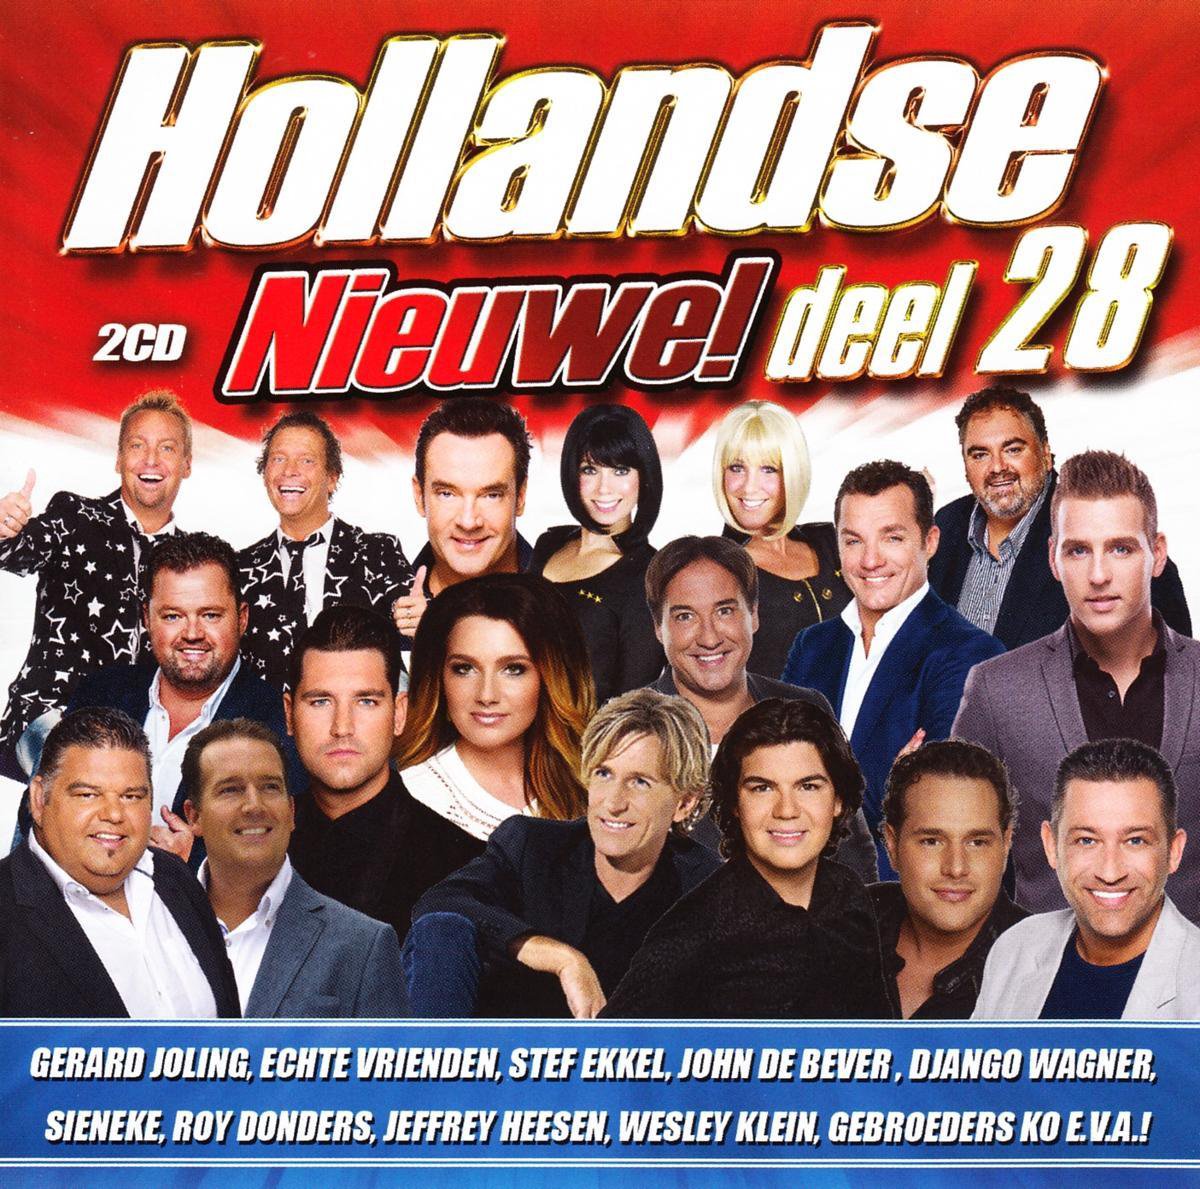 Hollandse Nieuwe Deel 28 (CD) - various artists